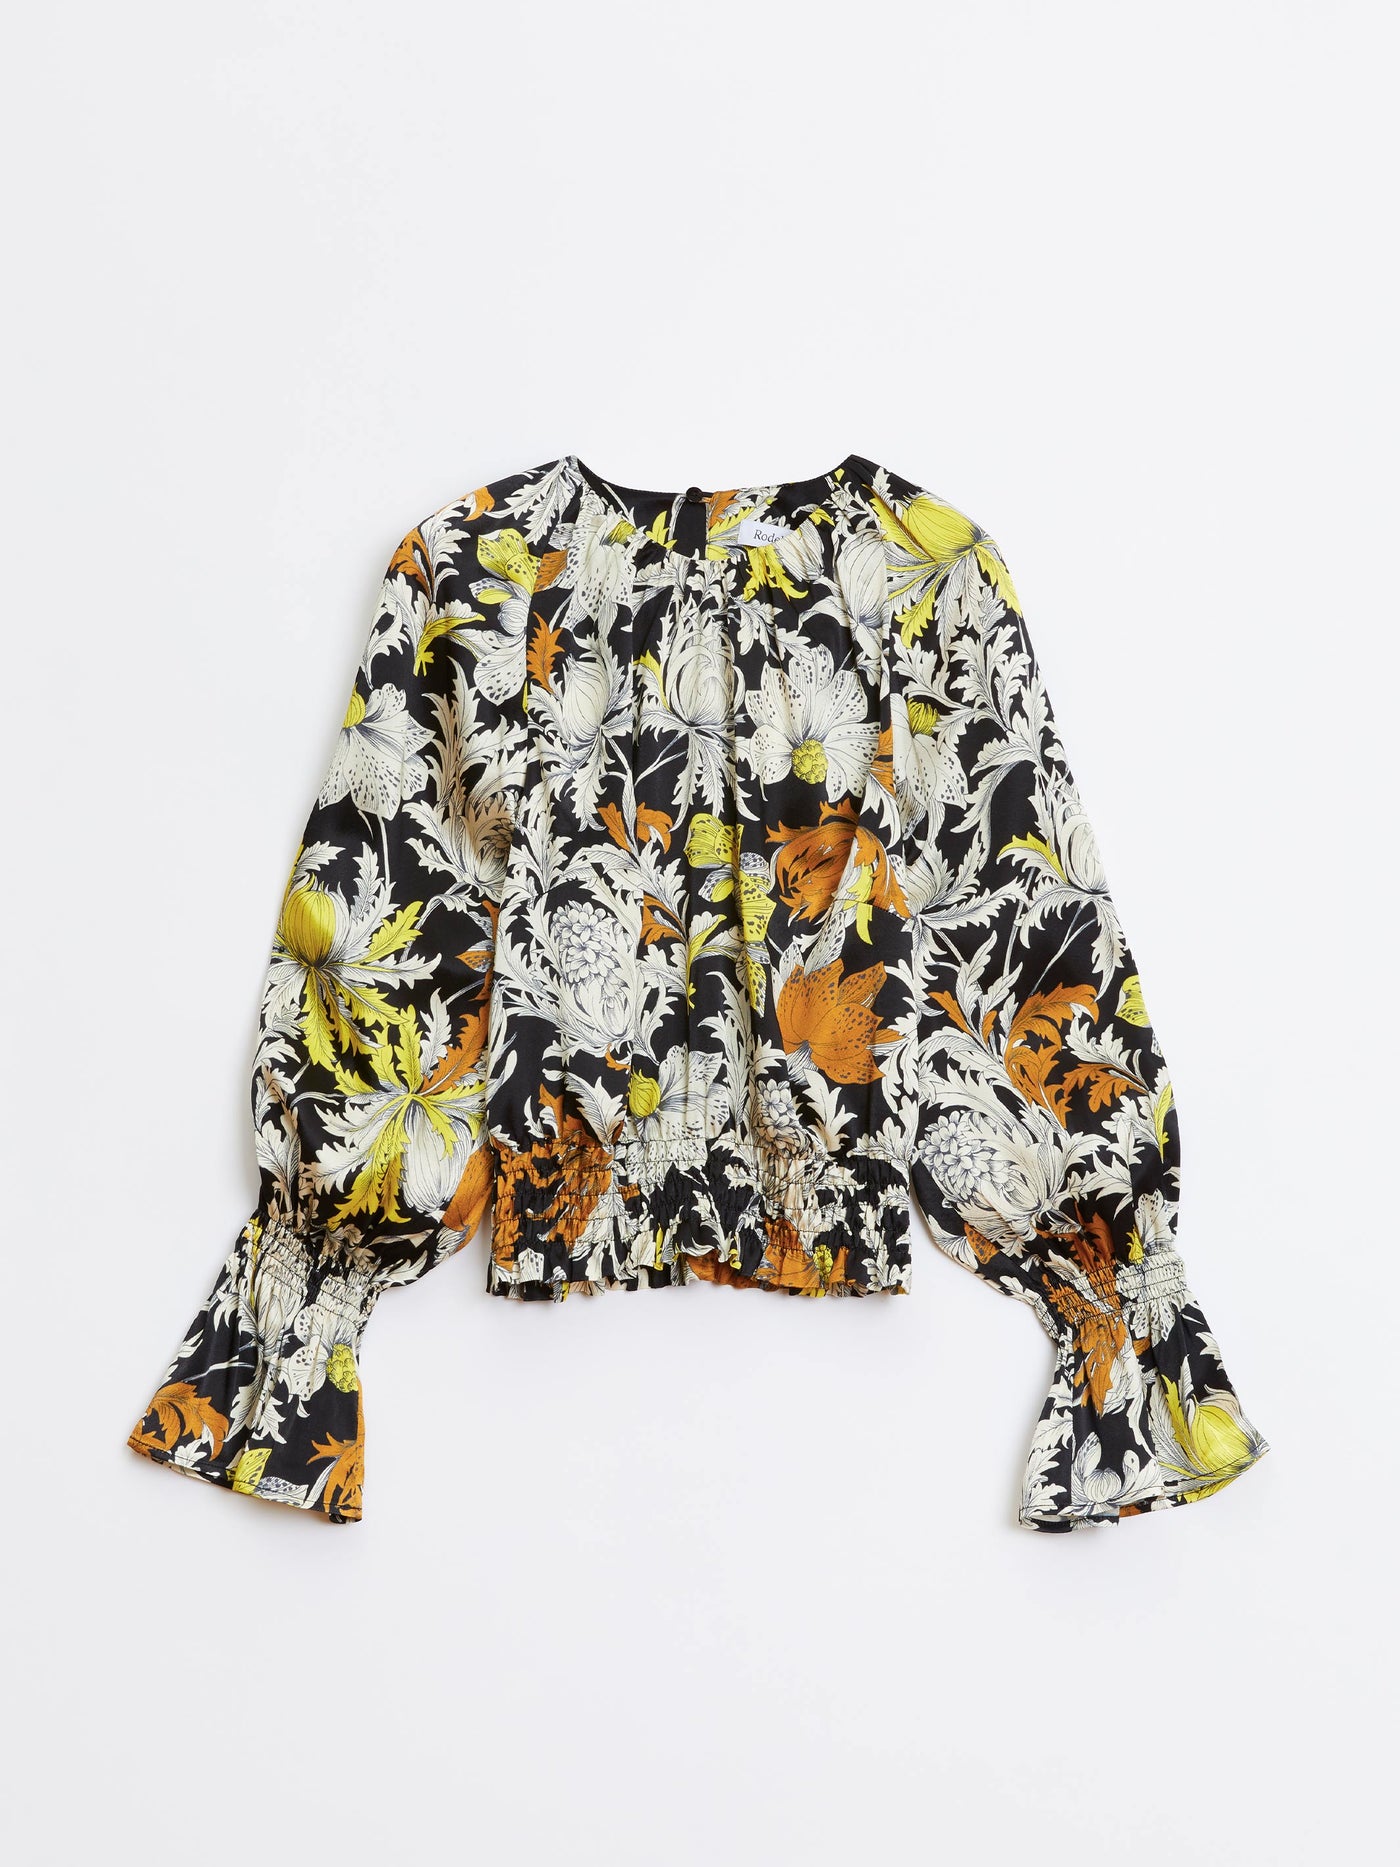 Adania blouse, multi-colored